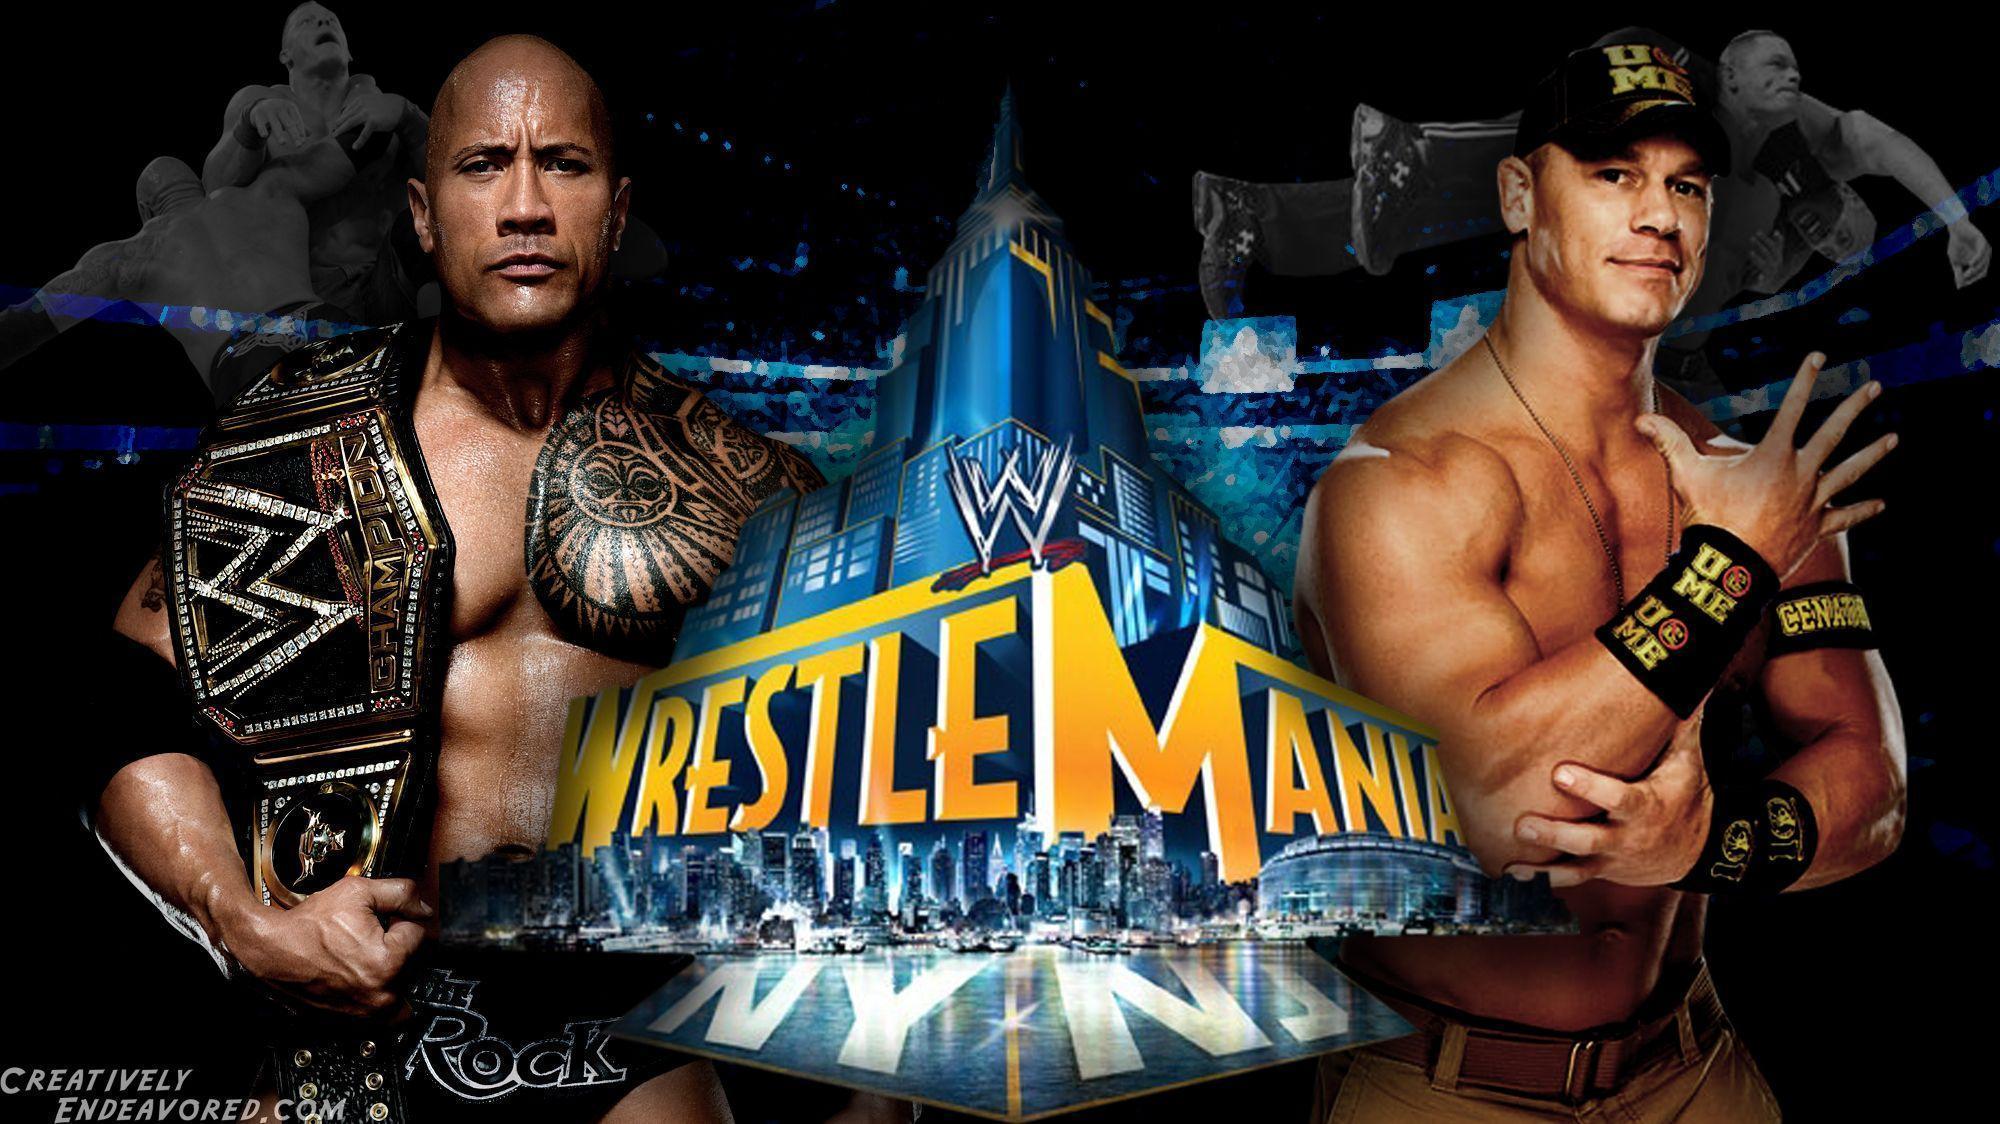 WrestleMania Wallpaper Wednesday: The Rock vs John Cena for